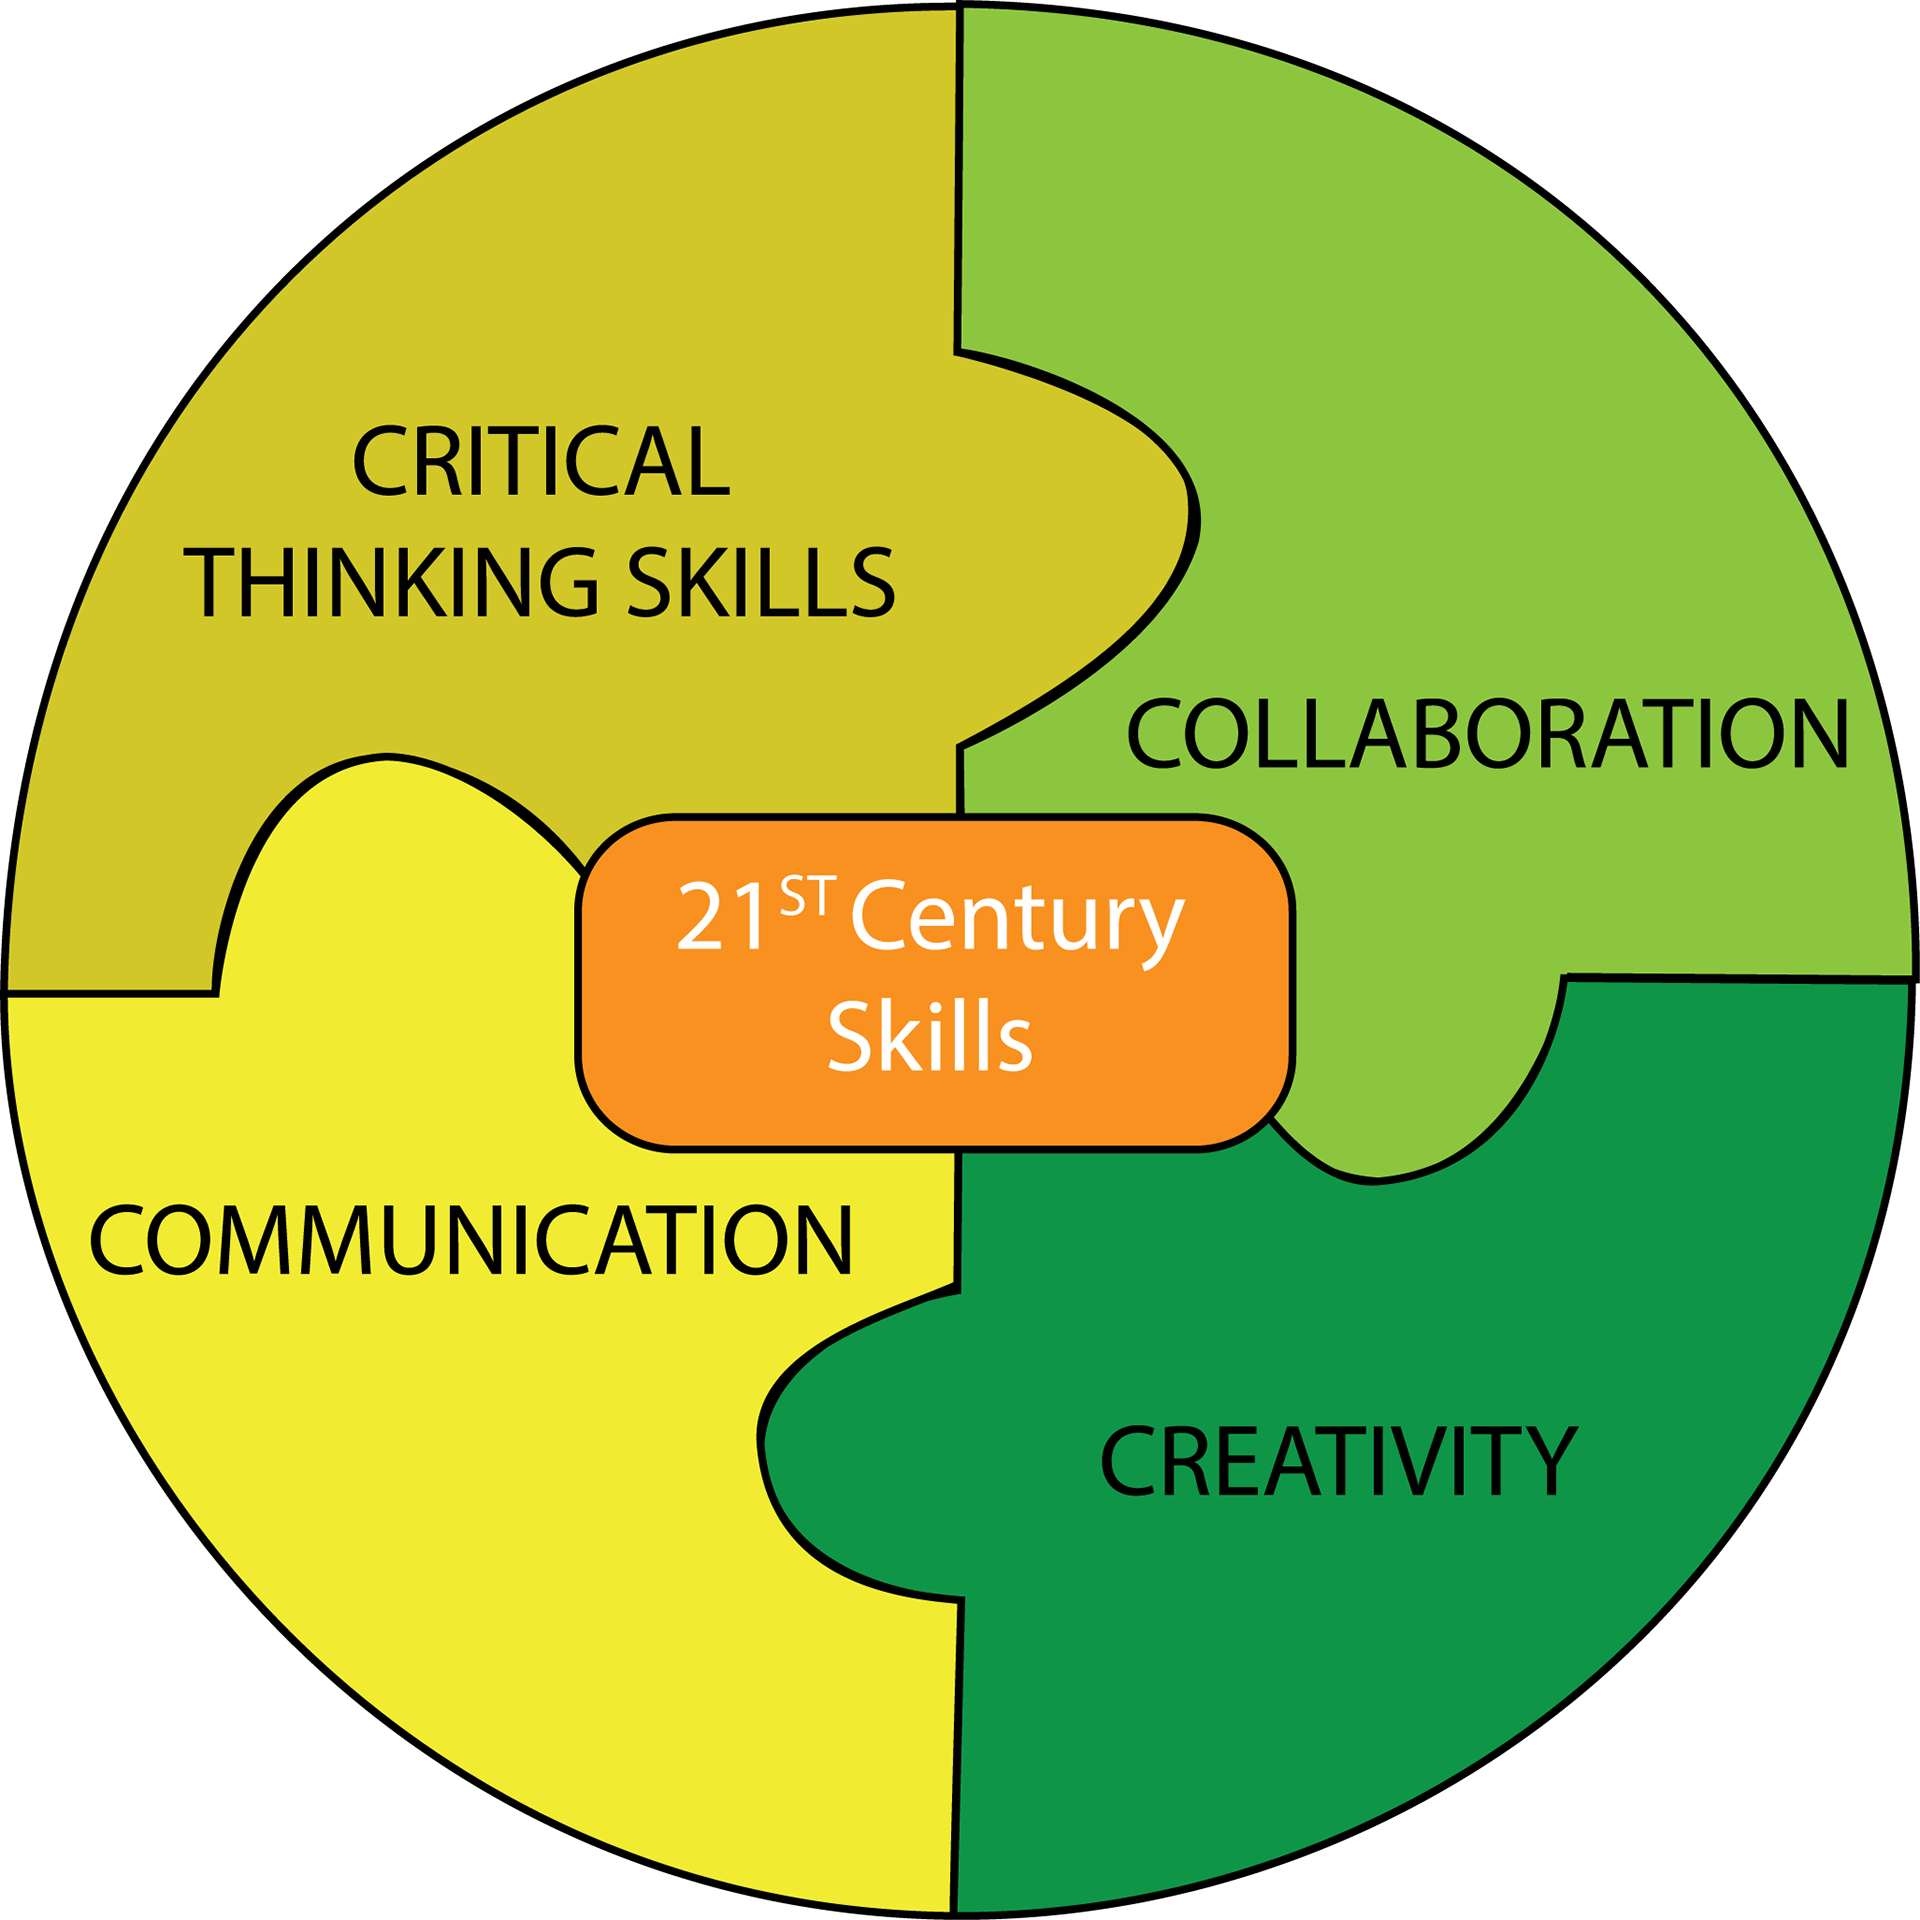 Классный навык. Навыки компетенции 21 века критическое мышление. 4 К компетенции 21 века в образовании.